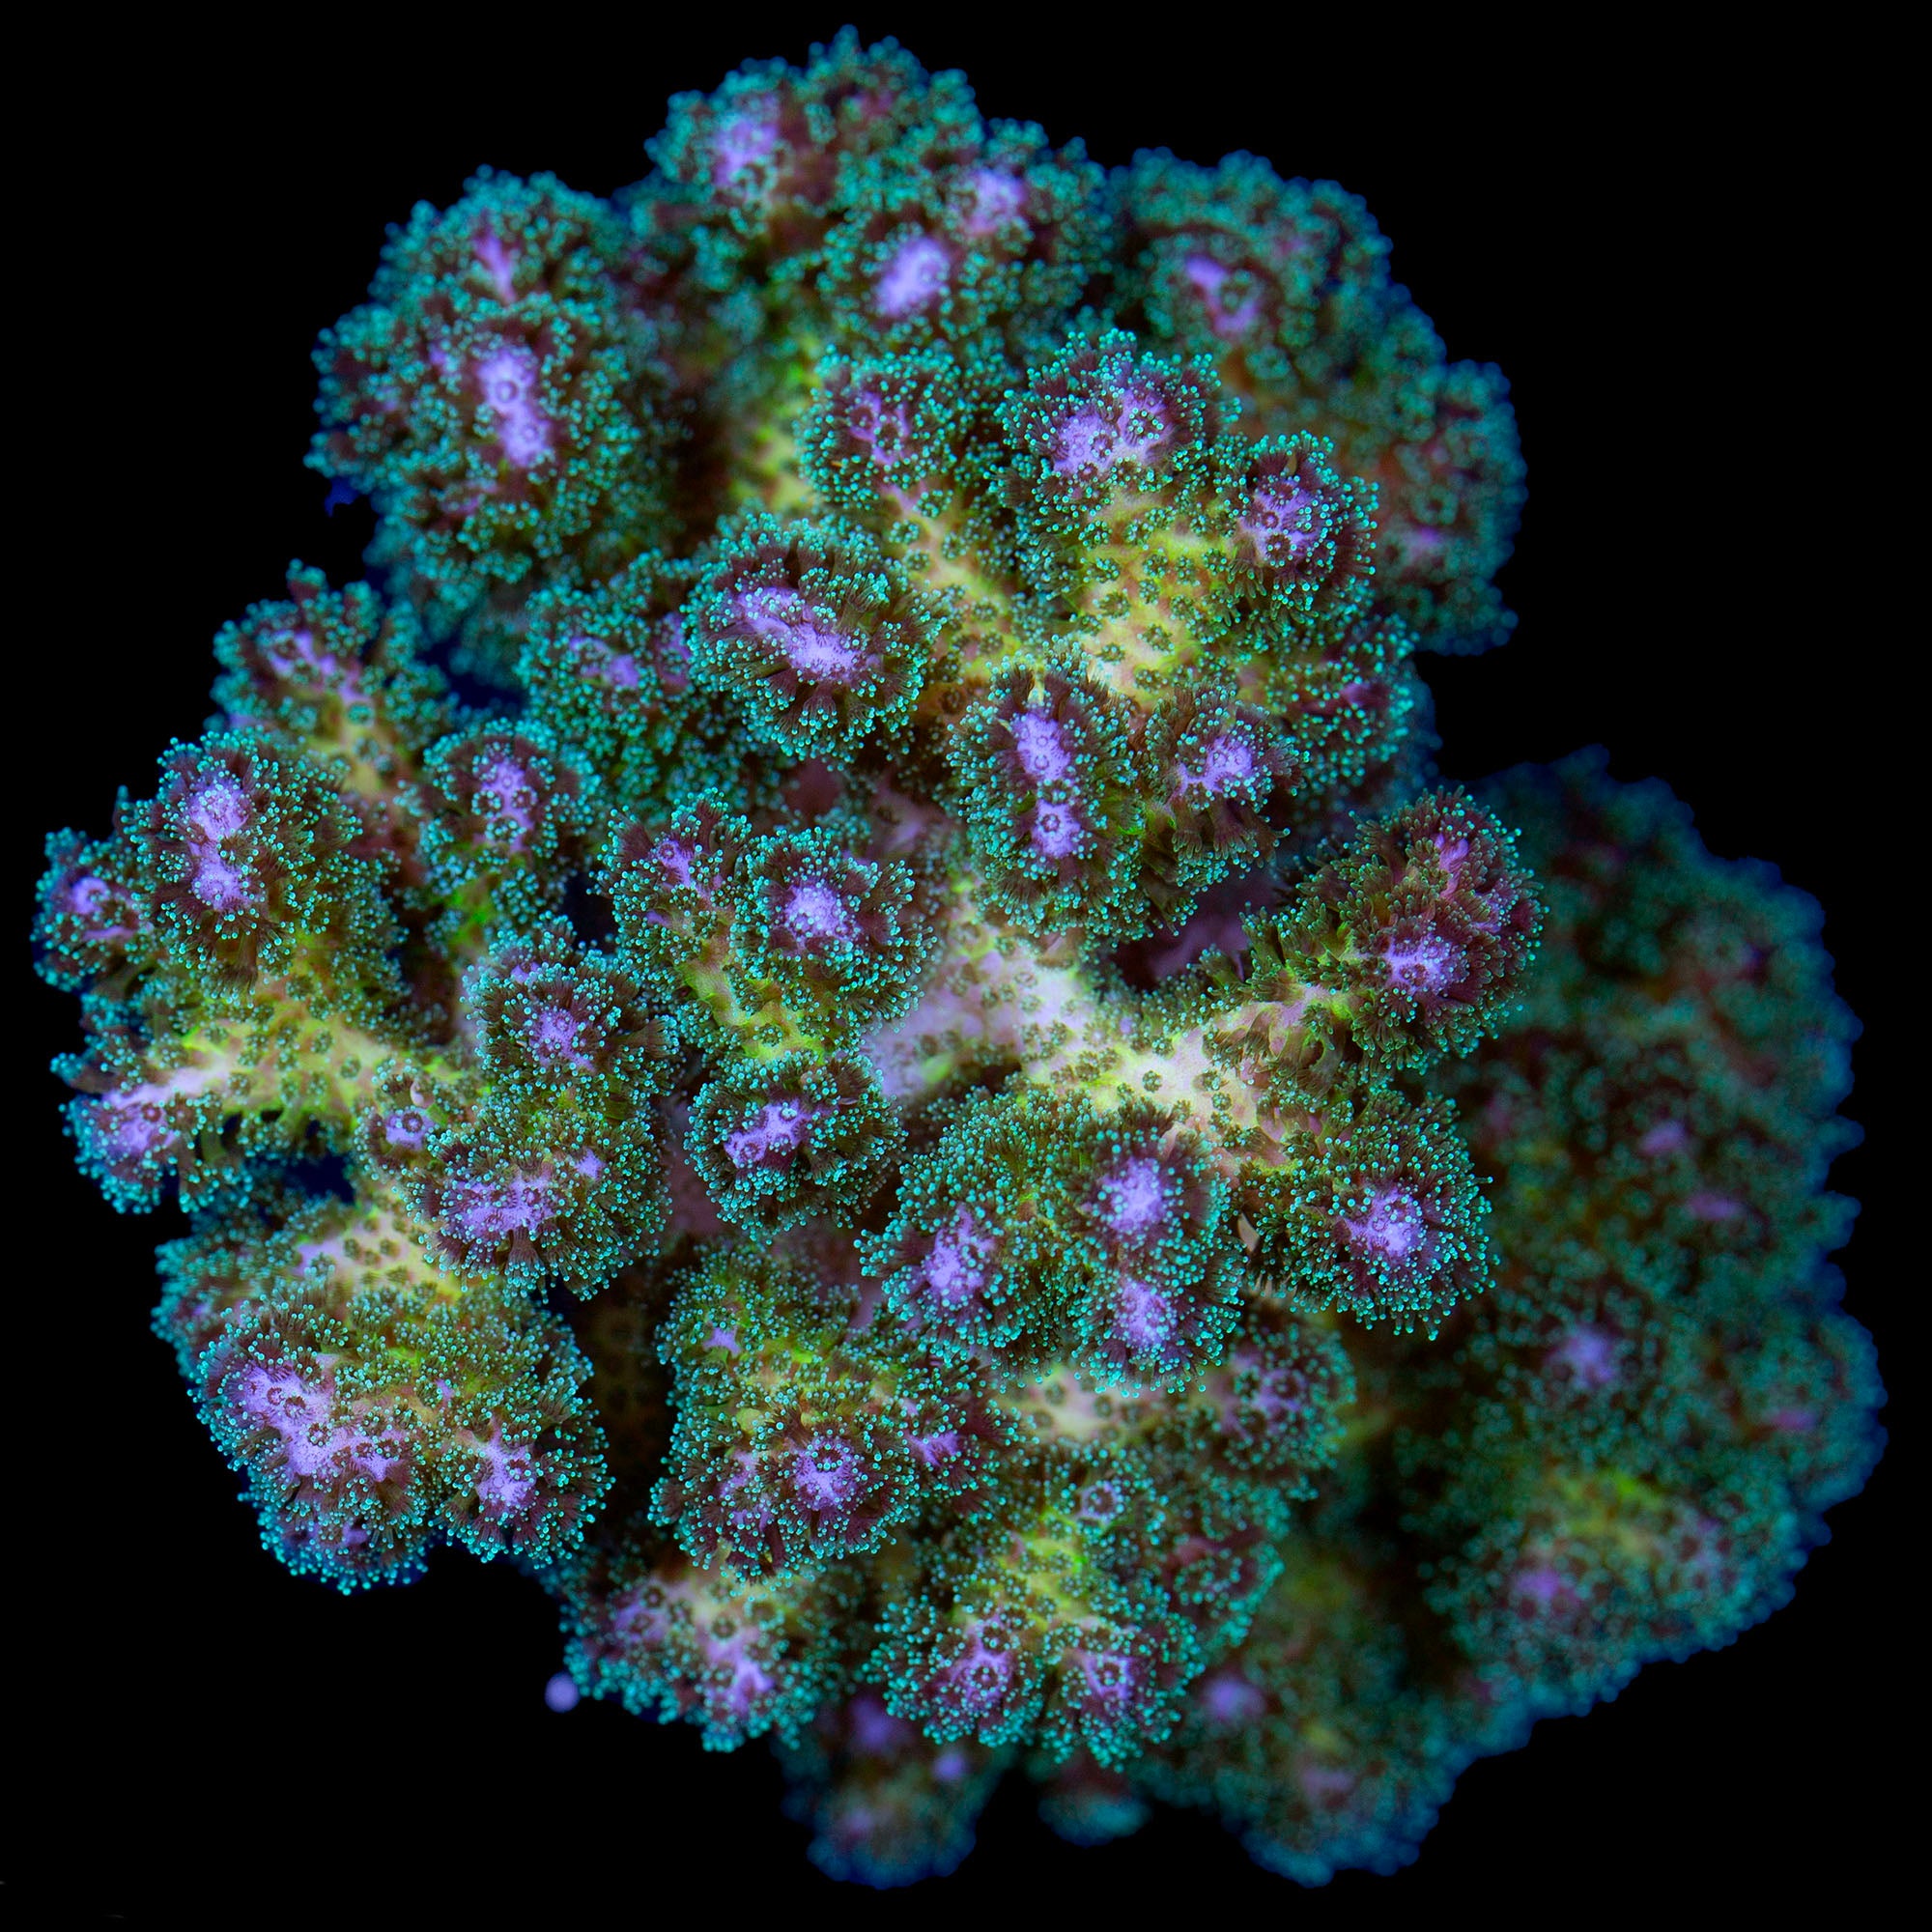 Purple & Green Pocillopora Coral